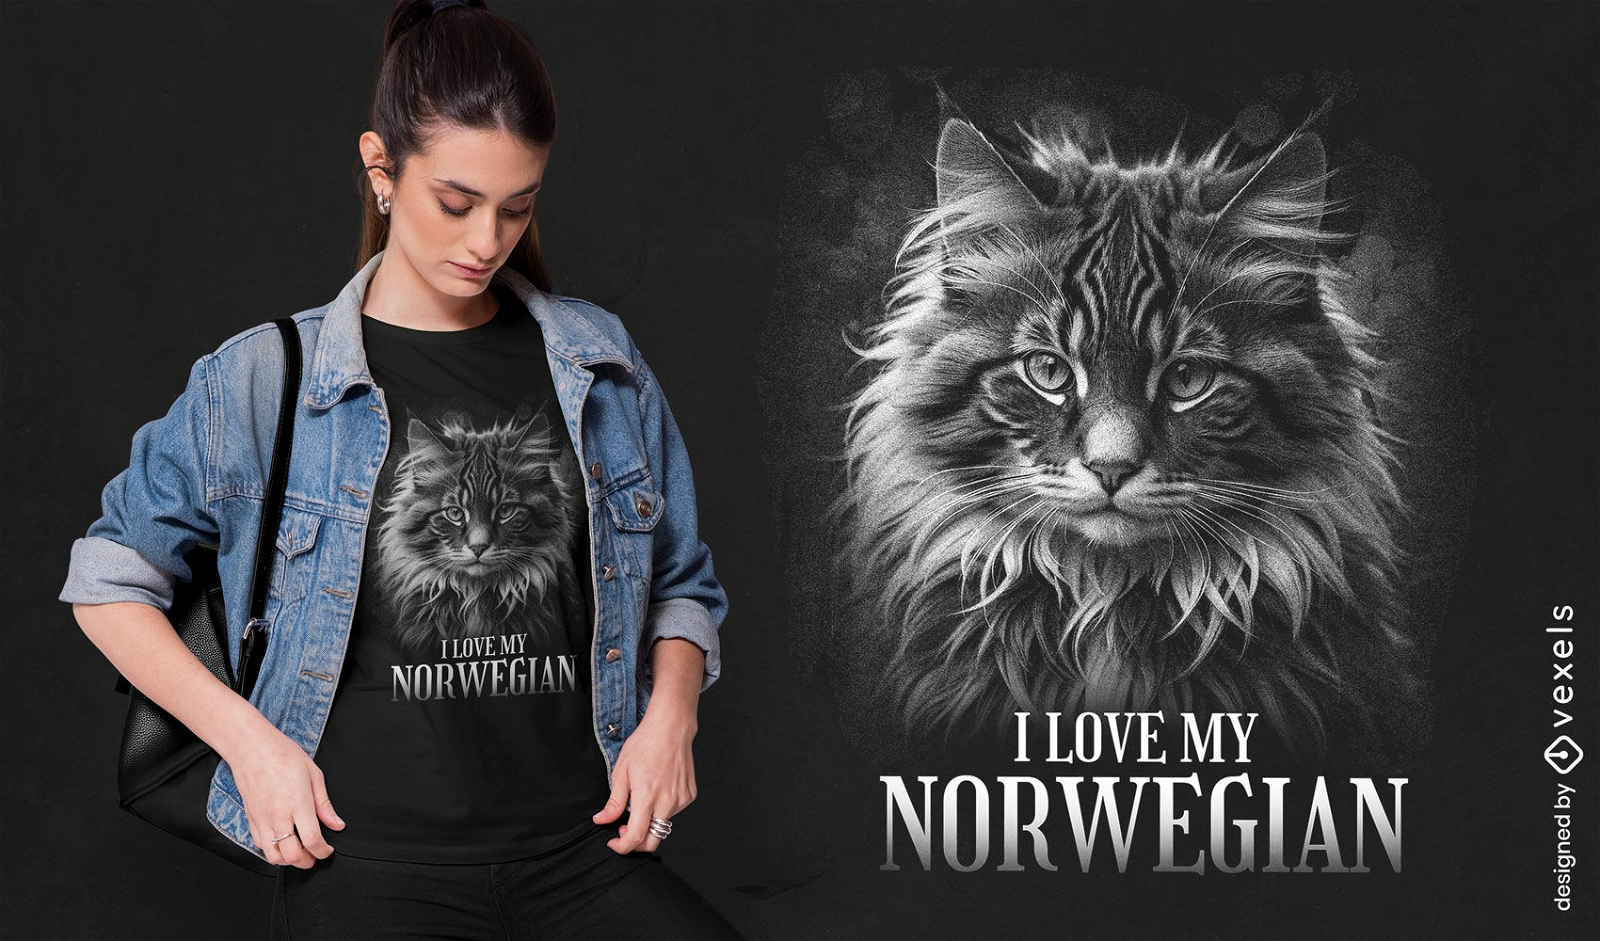 Me encanta el dise?o de camiseta de mi gato noruego.